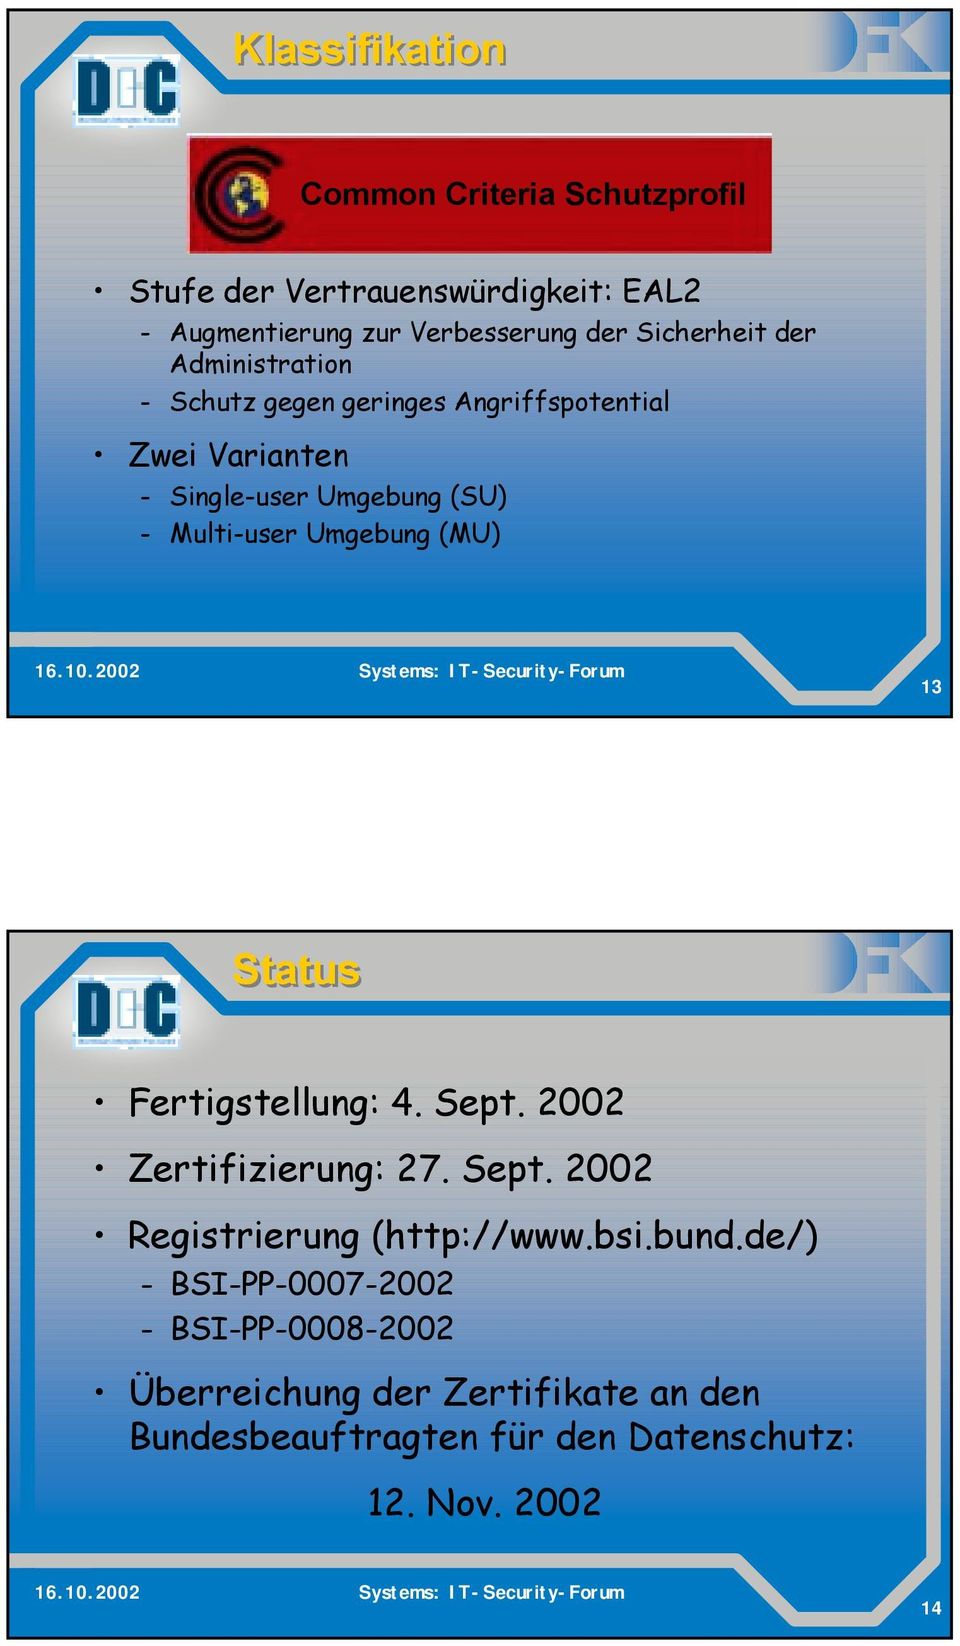 Umgebung (MU) 13 Status Fertigstellung: 4. Sept. 2002 Zertifizierung: 27. Sept. 2002 Registrierung (http://www.bsi.bund.